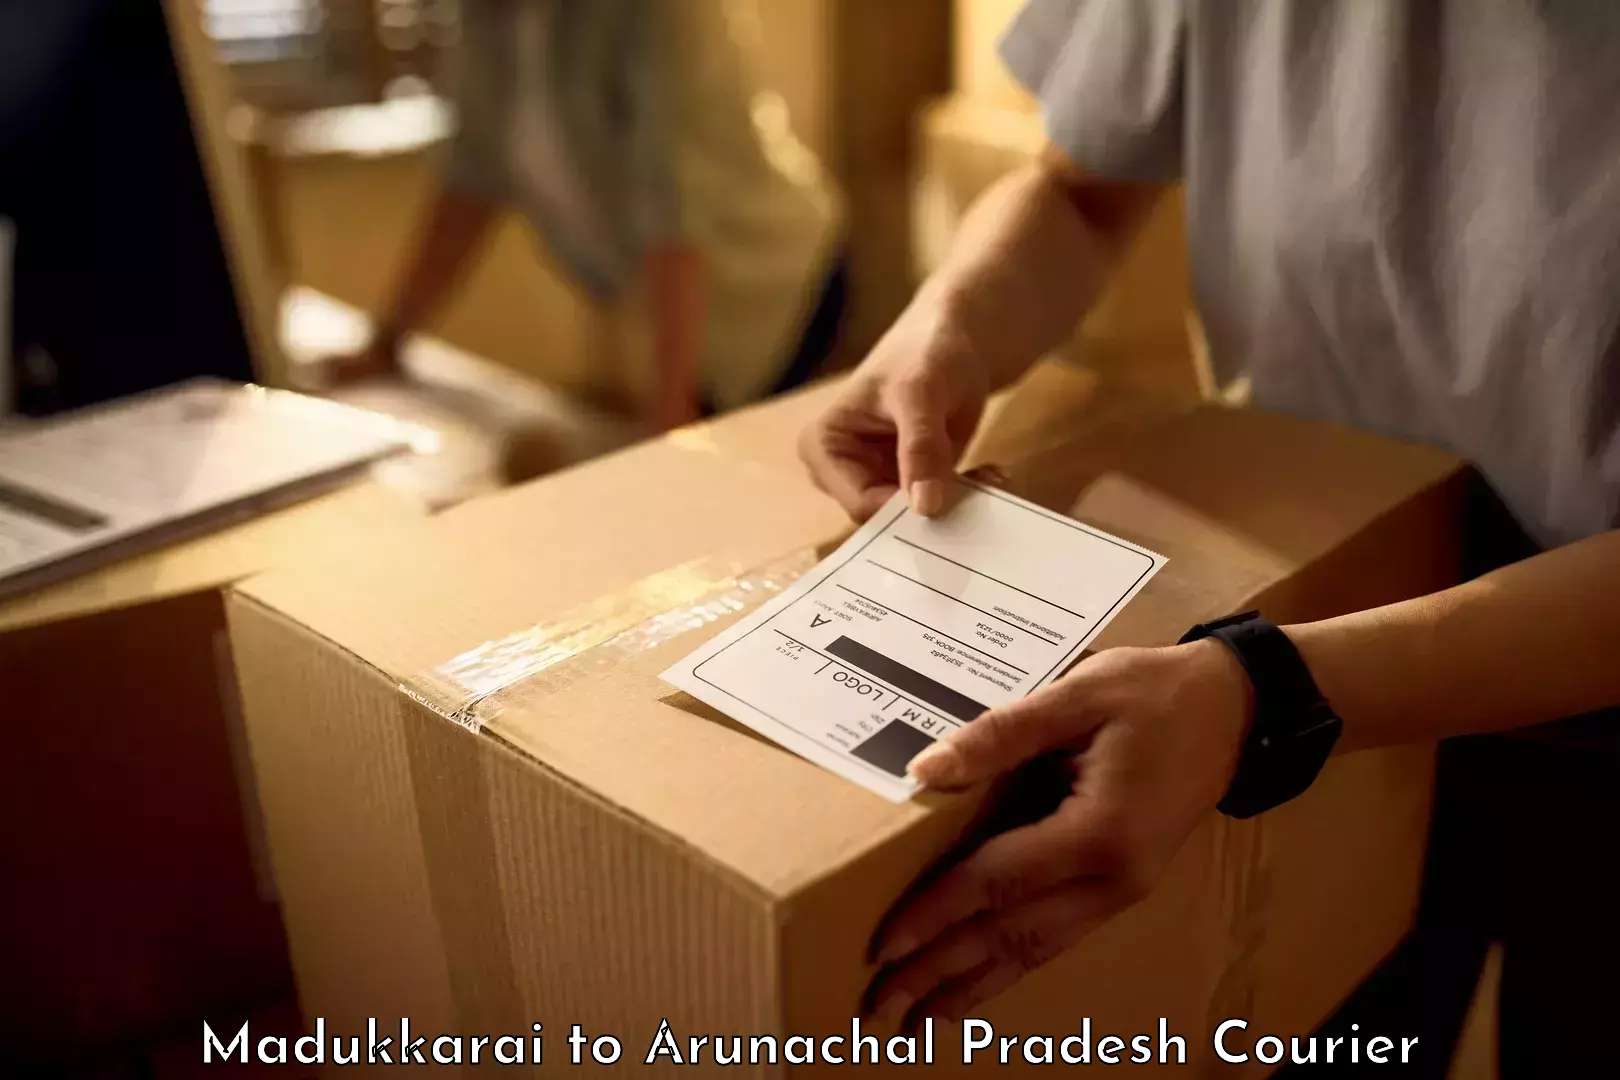 Efficient baggage courier system Madukkarai to Arunachal Pradesh